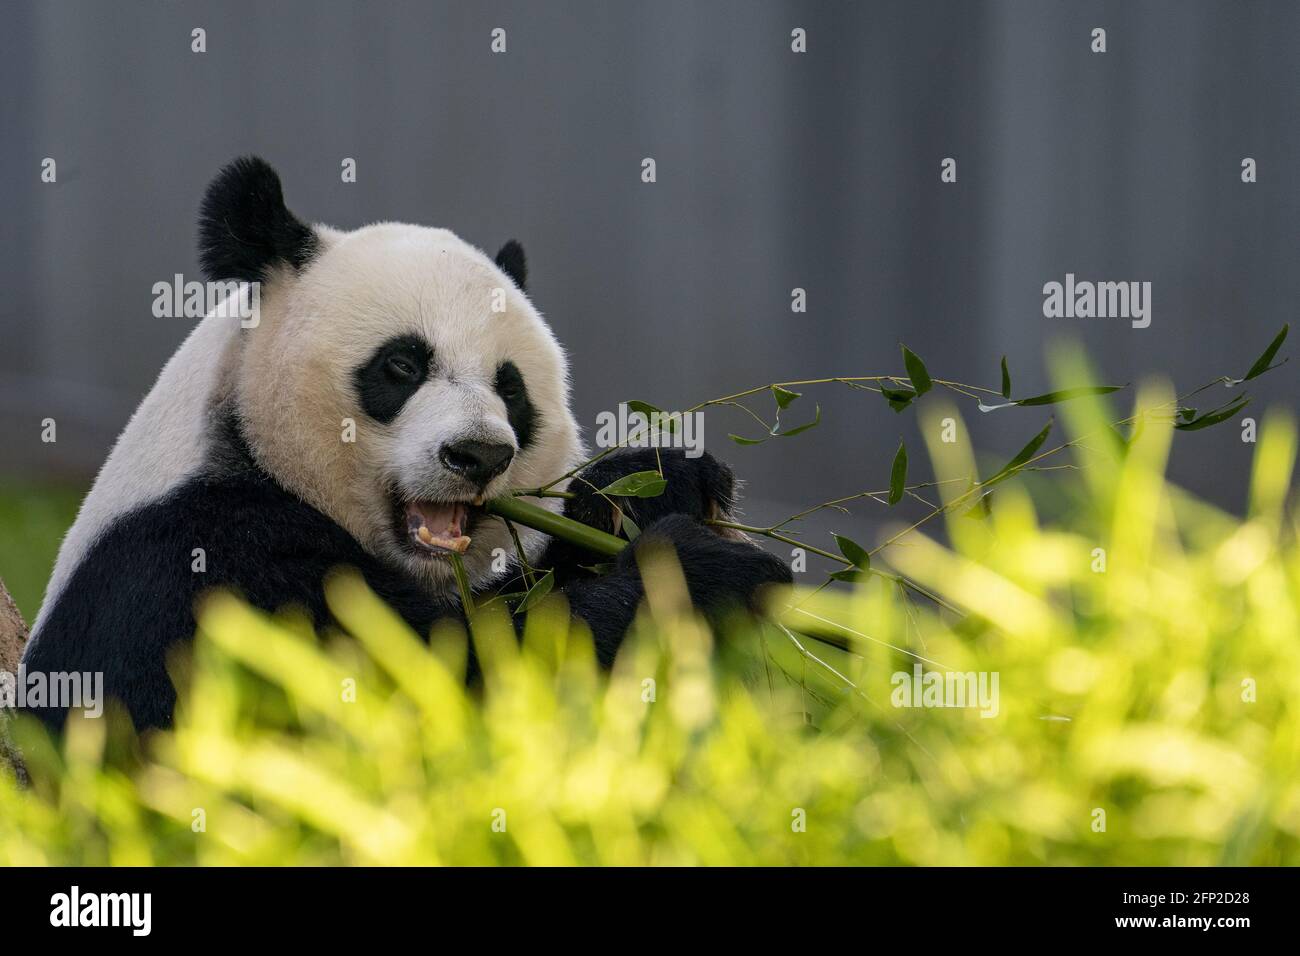 Mei Xiang, eine 22-jährige weibliche Riesenpanda, isst am Donnerstag, den 20. Mai 2021, im Smithsonian National Zoo in Washington, D.C., Bambus. Der Smithsonian National Zoo ist am Freitag wieder für die Öffentlichkeit zugänglich, da er wegen Covid-19 geschlossen ist. Foto von Tasos Katopodis/UPI Stockfoto